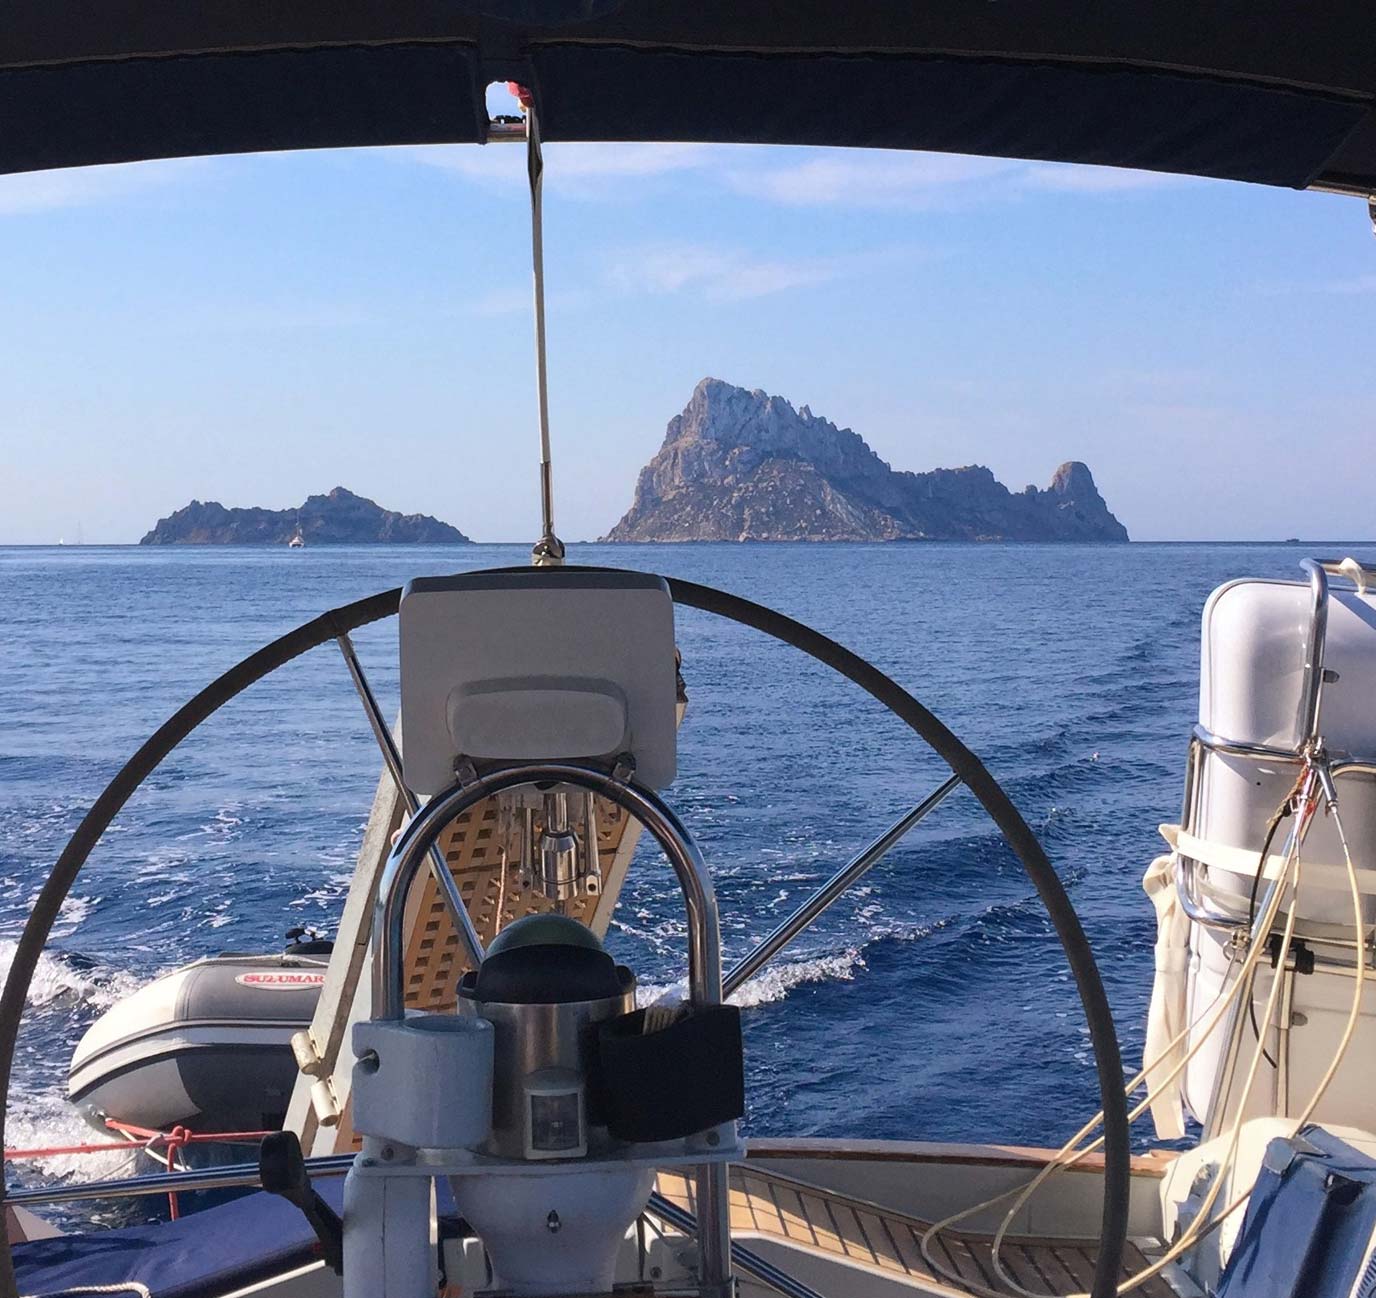 De regresoa a península con Es vedra Ibiza